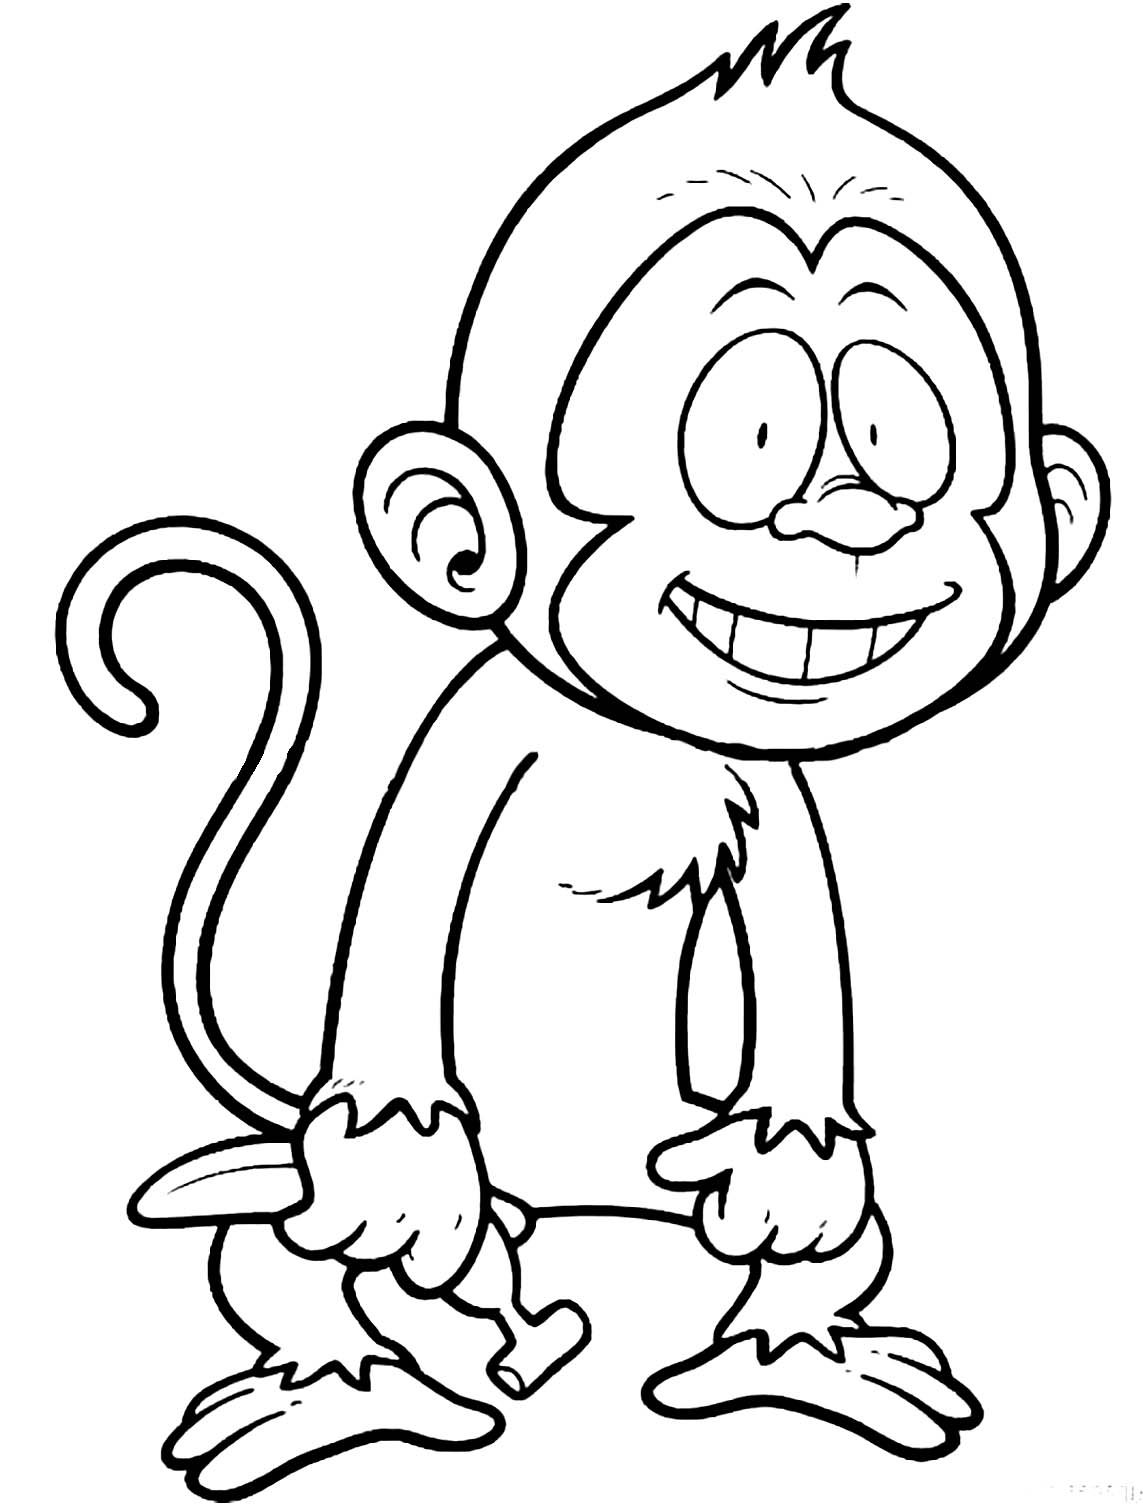 Coloração fácil de macacos para crianças